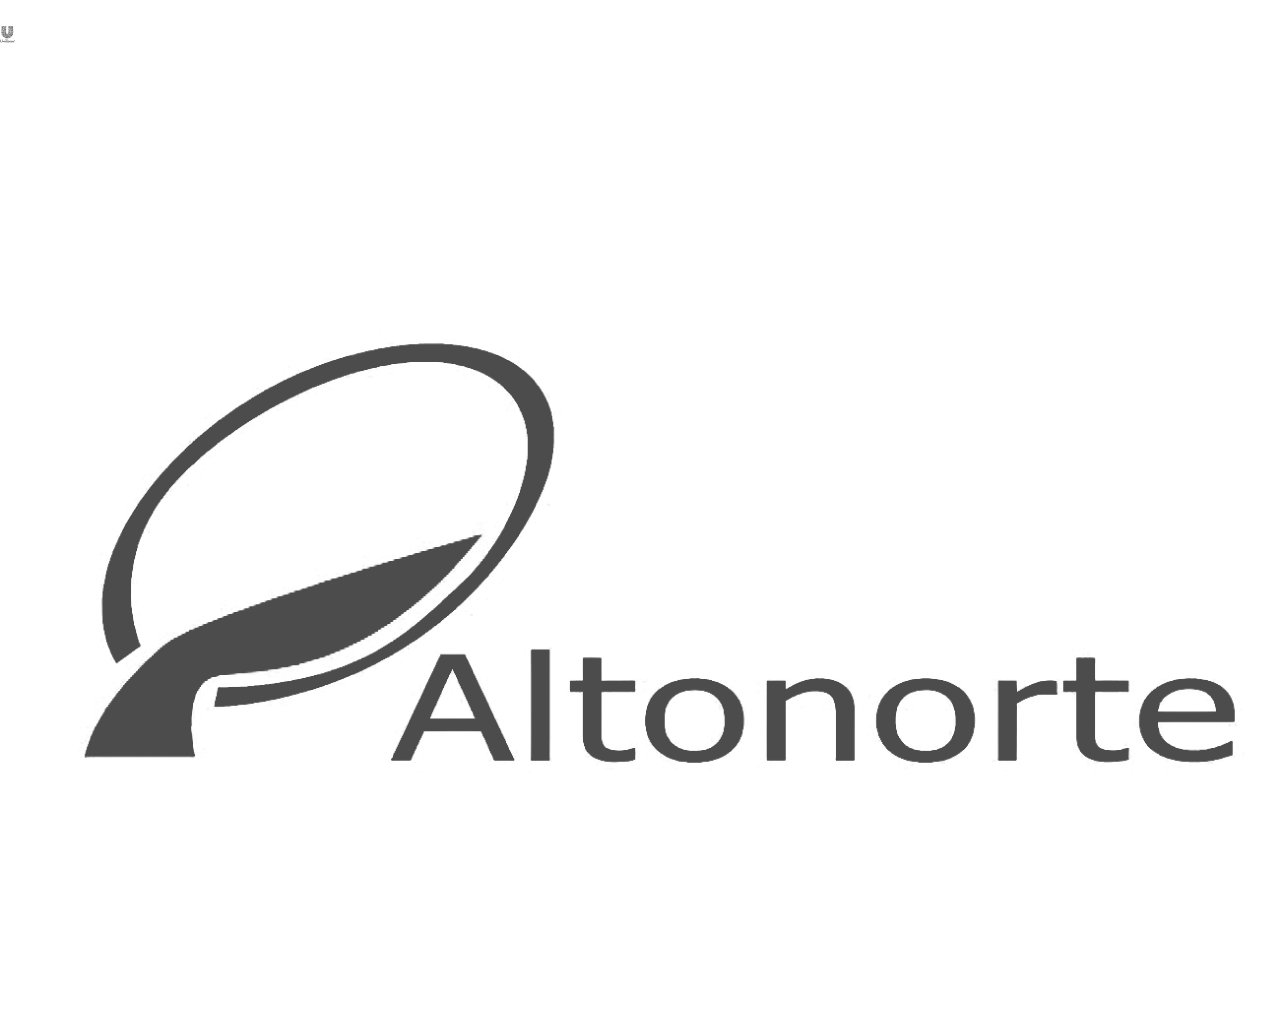 Altonorte logo